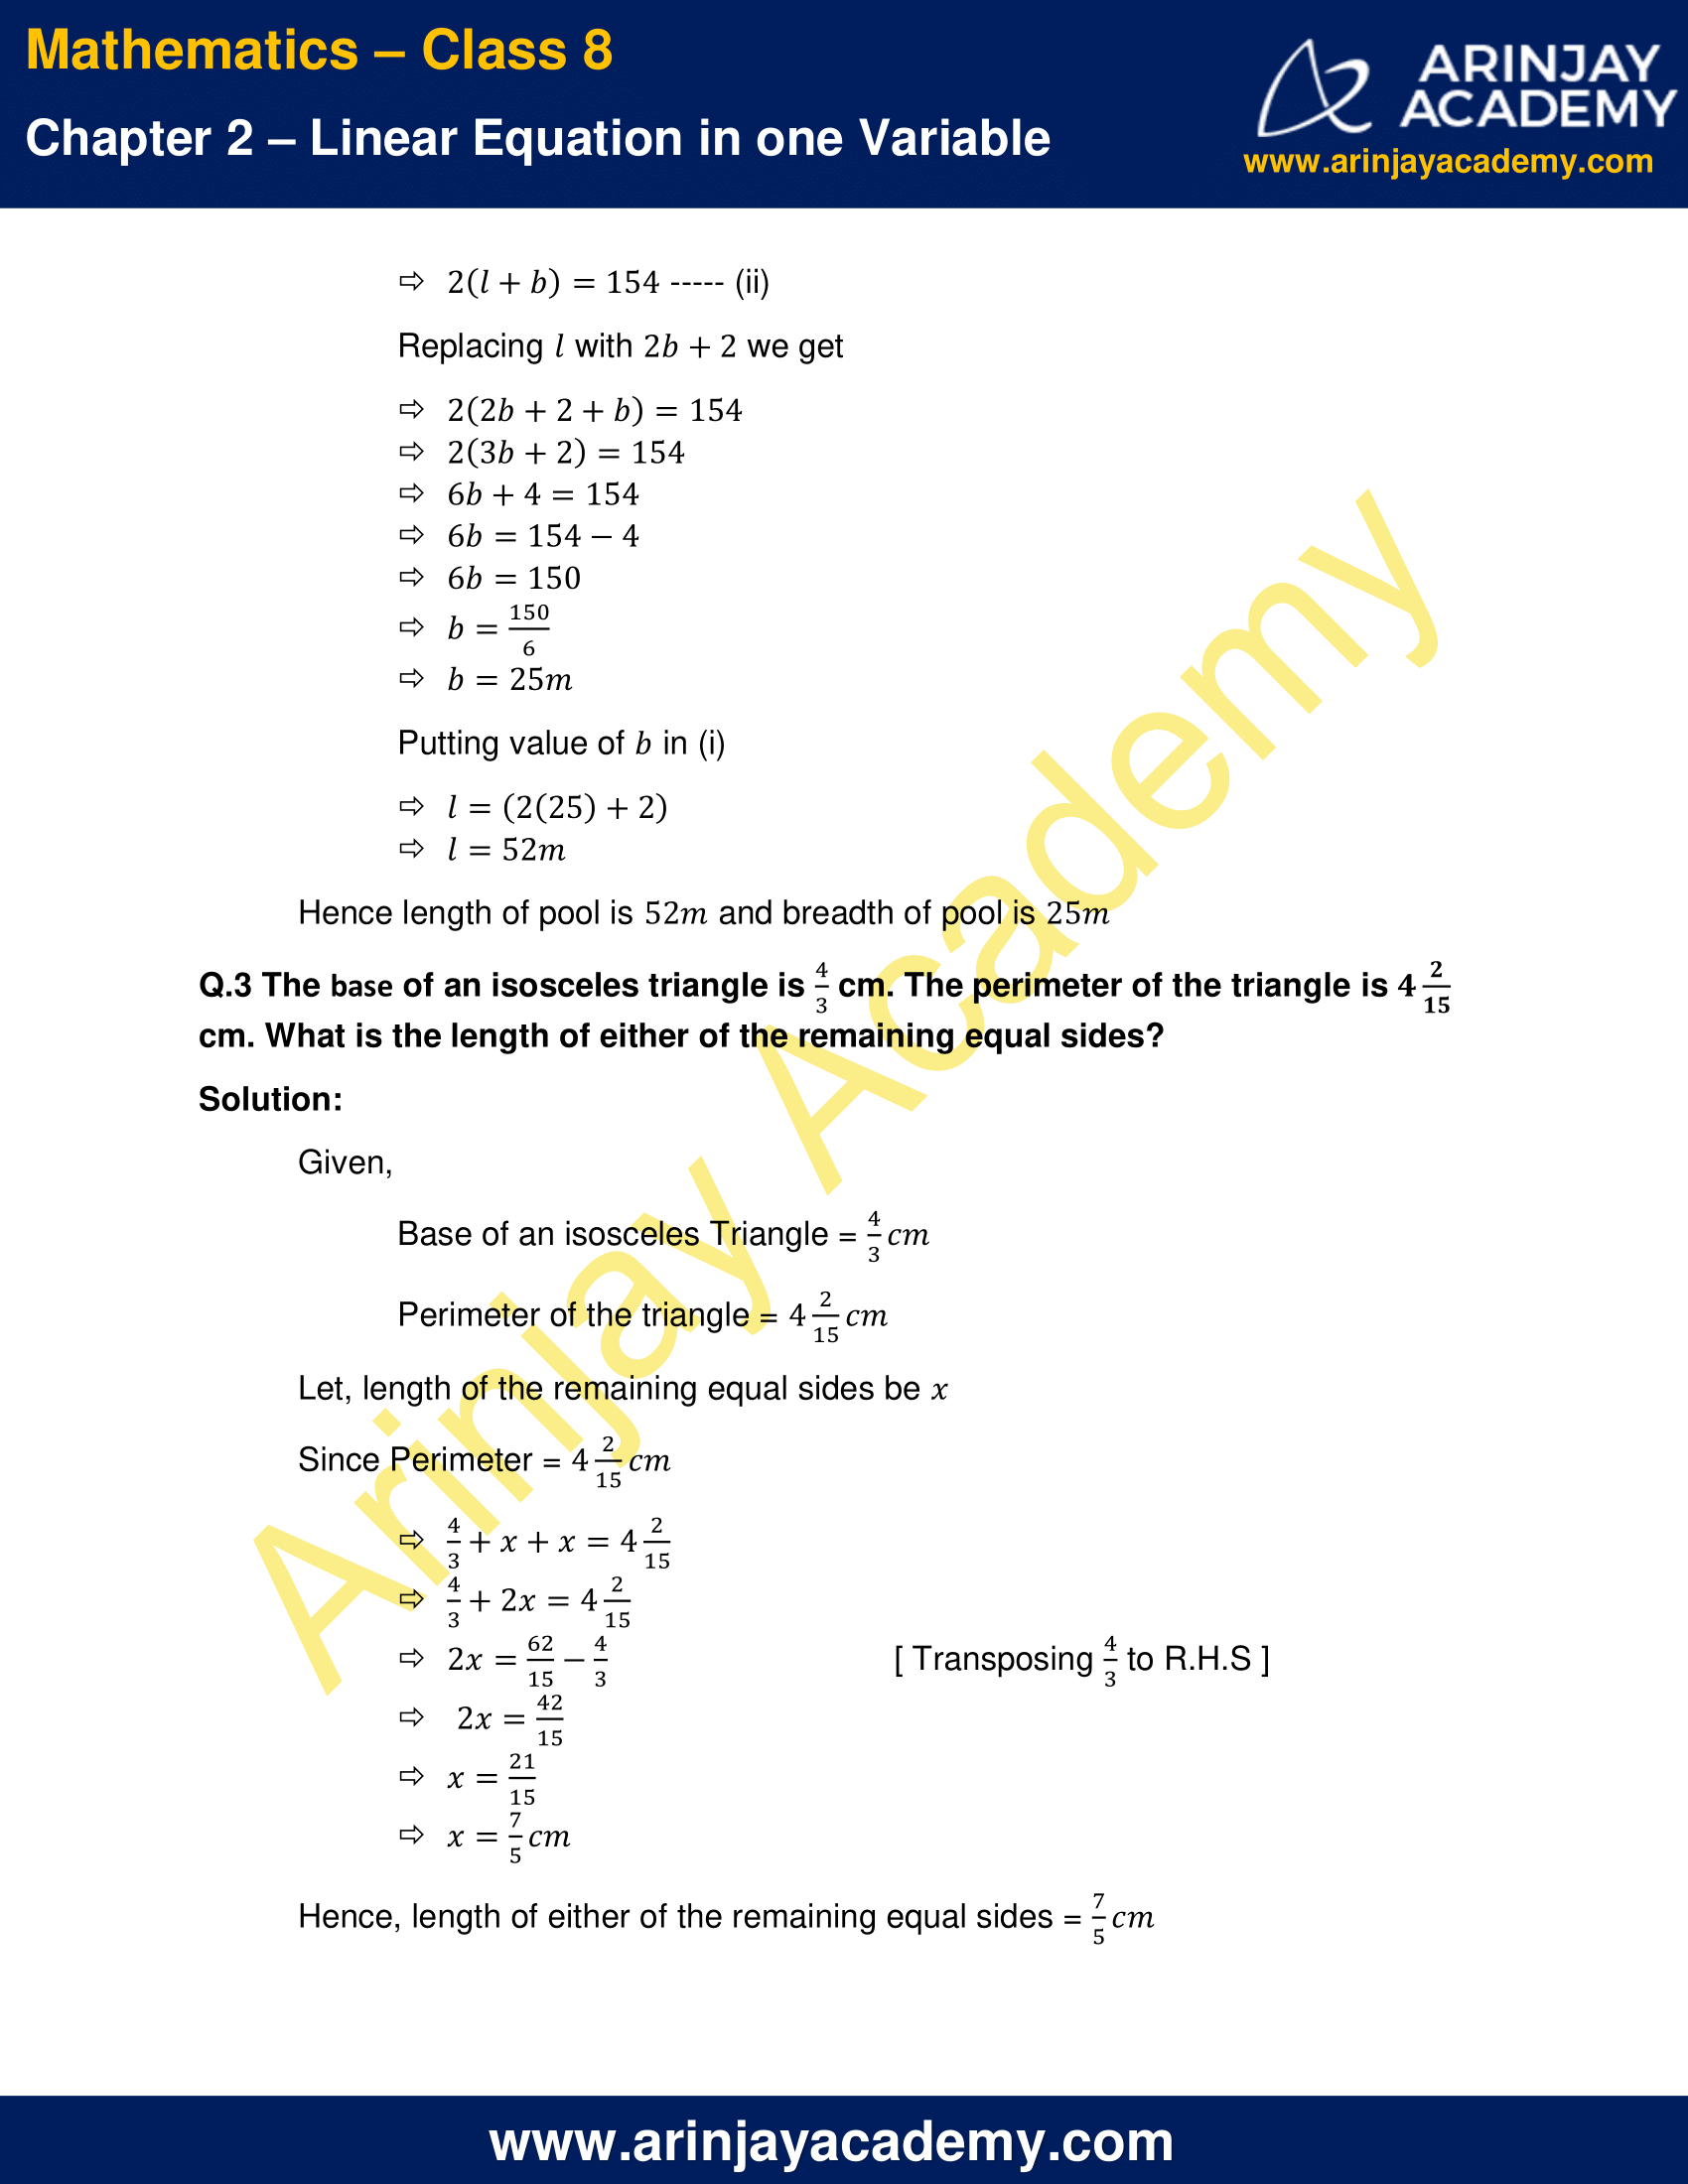 assignment for class 8 maths chapter 2